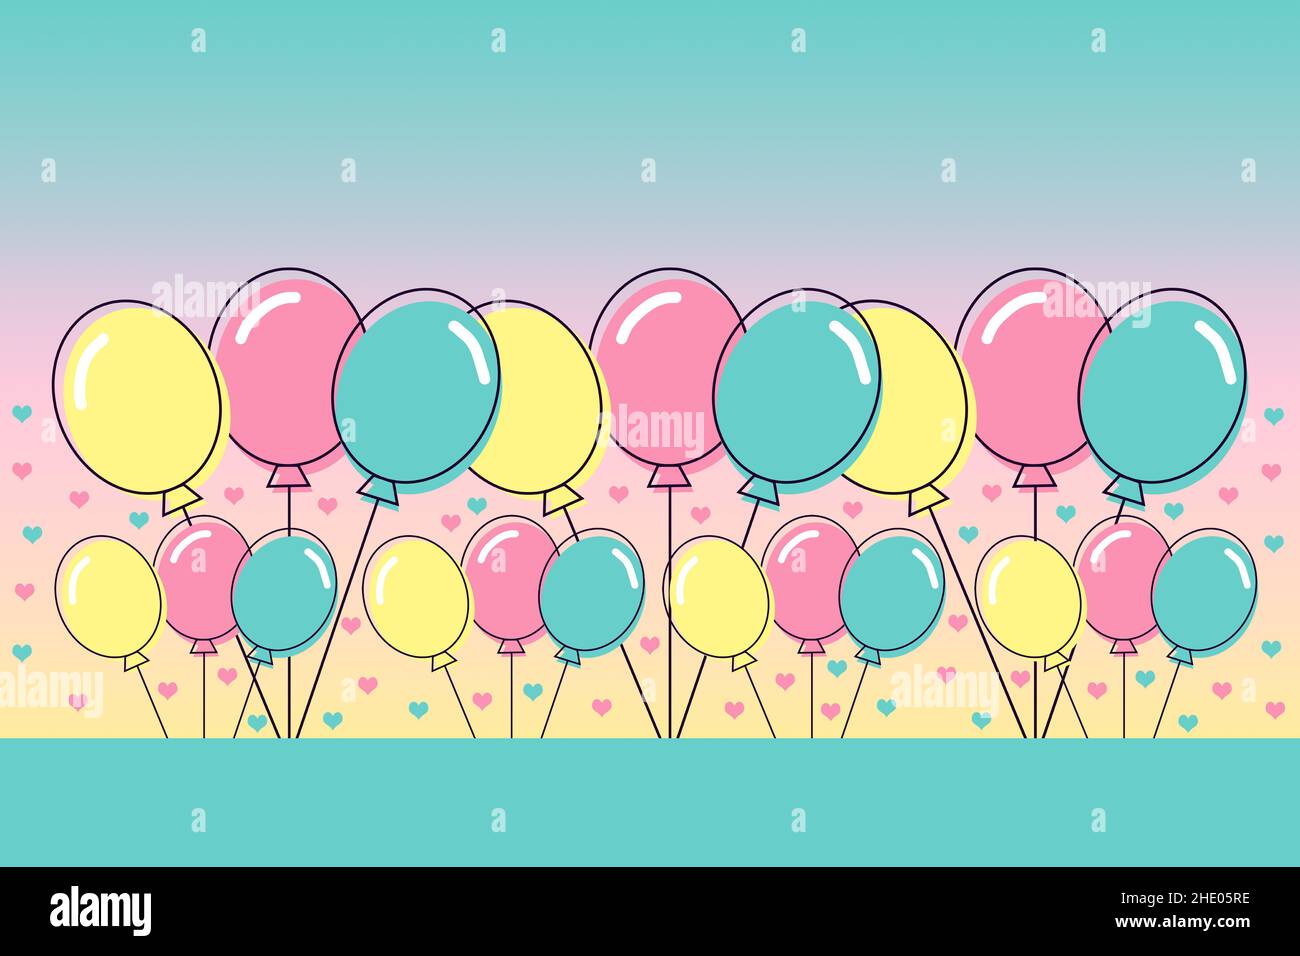 Darstellung von Reihen von Ballons in rosa, gelb und grün auf einem abgestuften Hintergrund mit Platz für Text. Stockfoto